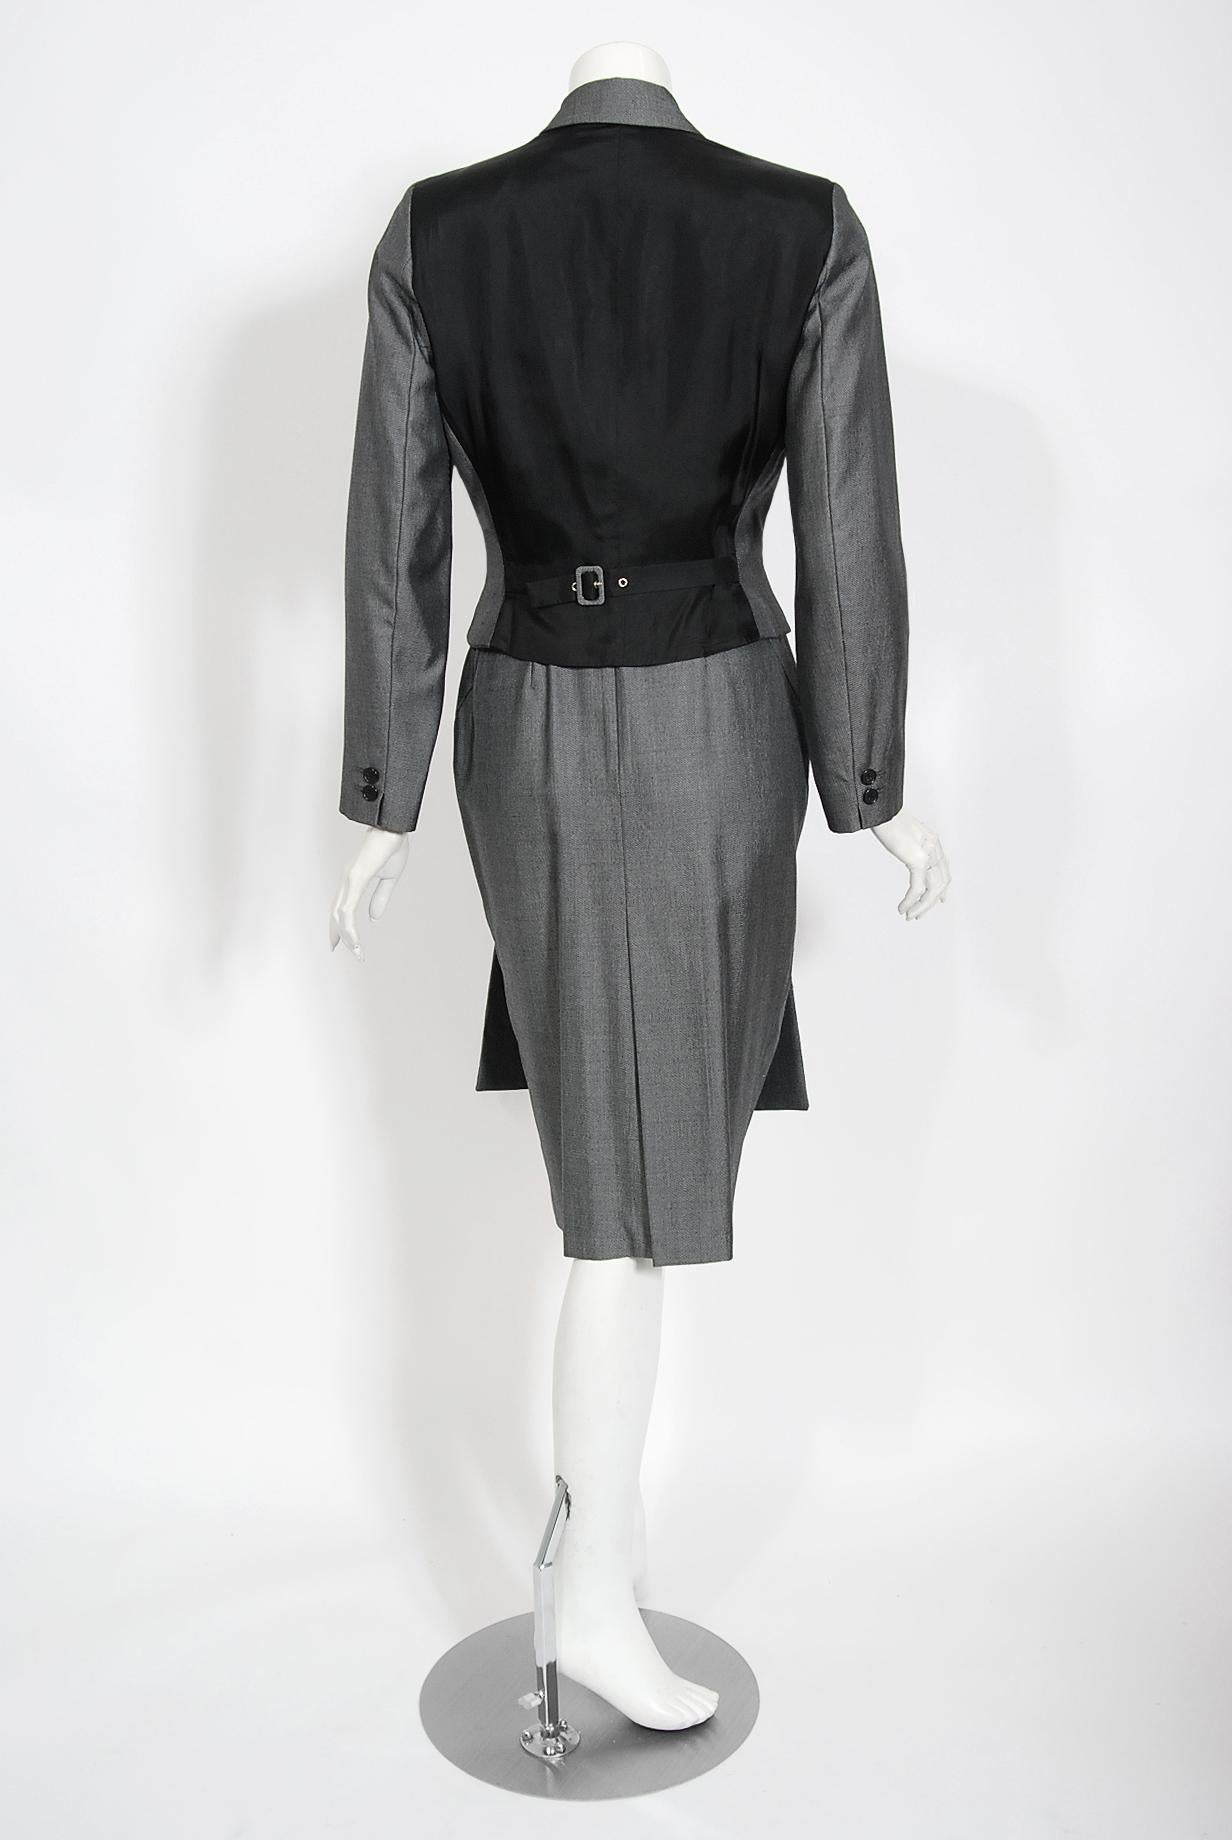 Vintage 1997 Alexander McQueen Gray Sharkskin Wool Hourglass Dress & Suit Jacket 9